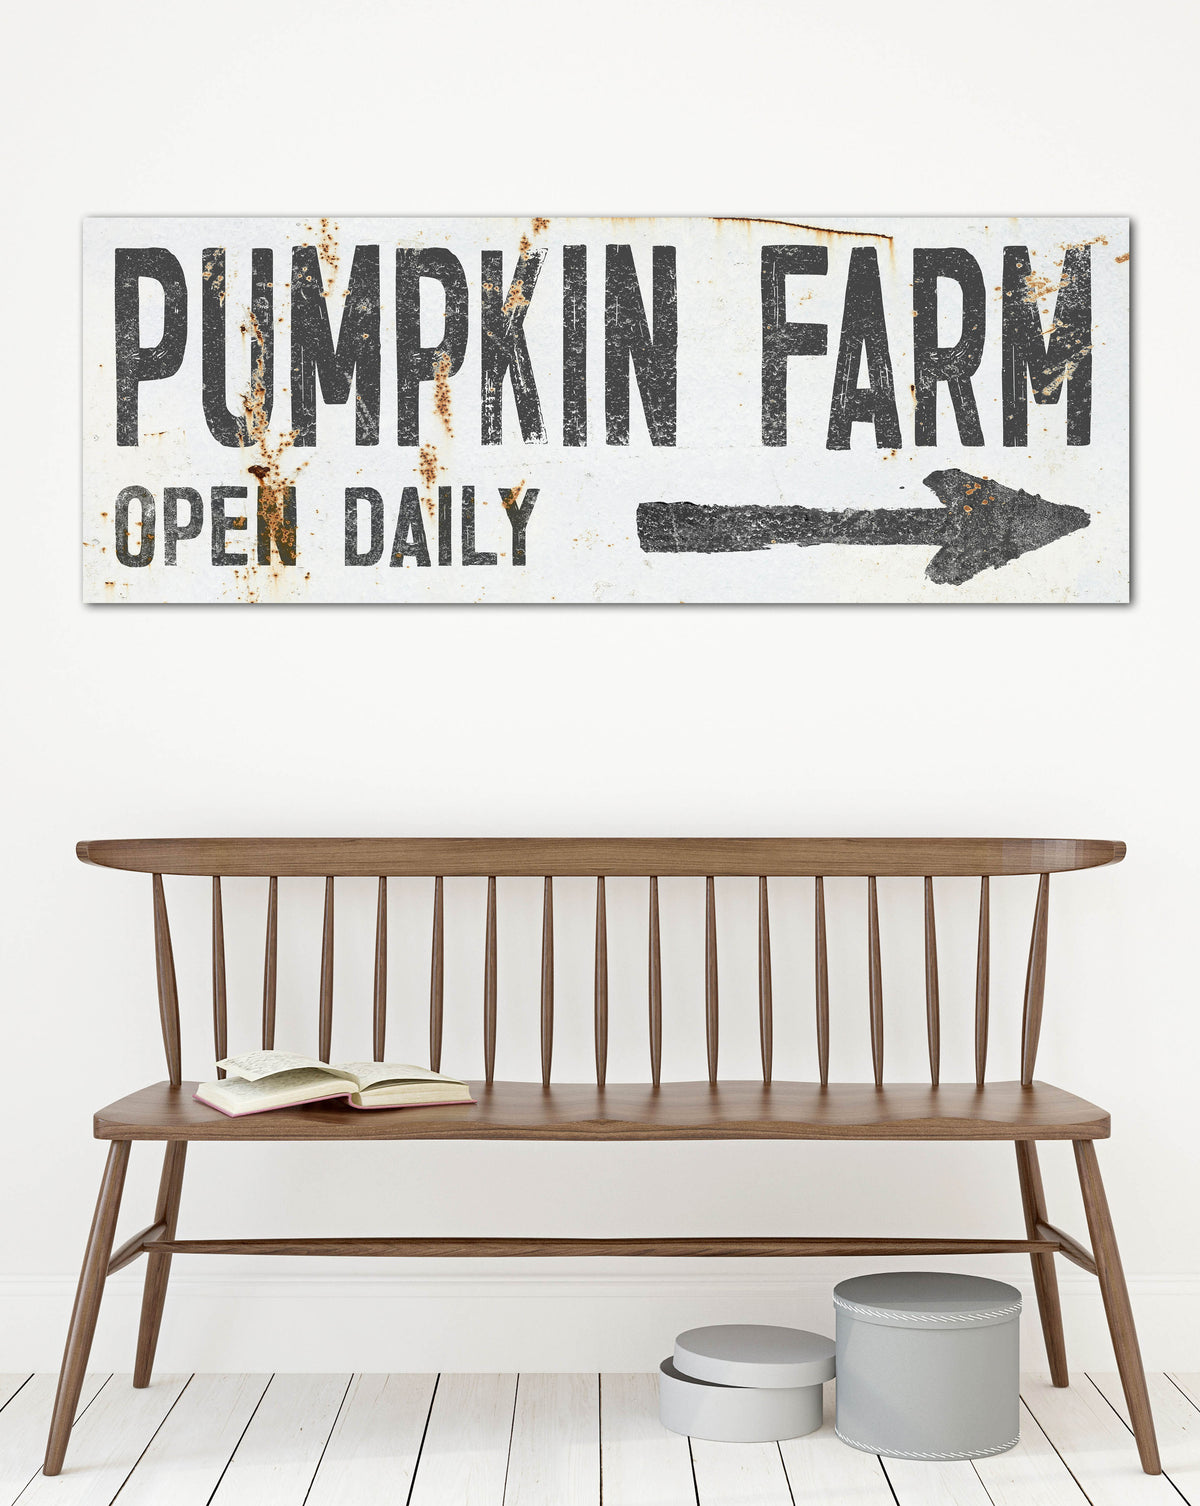 White Pumpkin Farm Vintage Farmhouse Canvas Wall Art - LC61